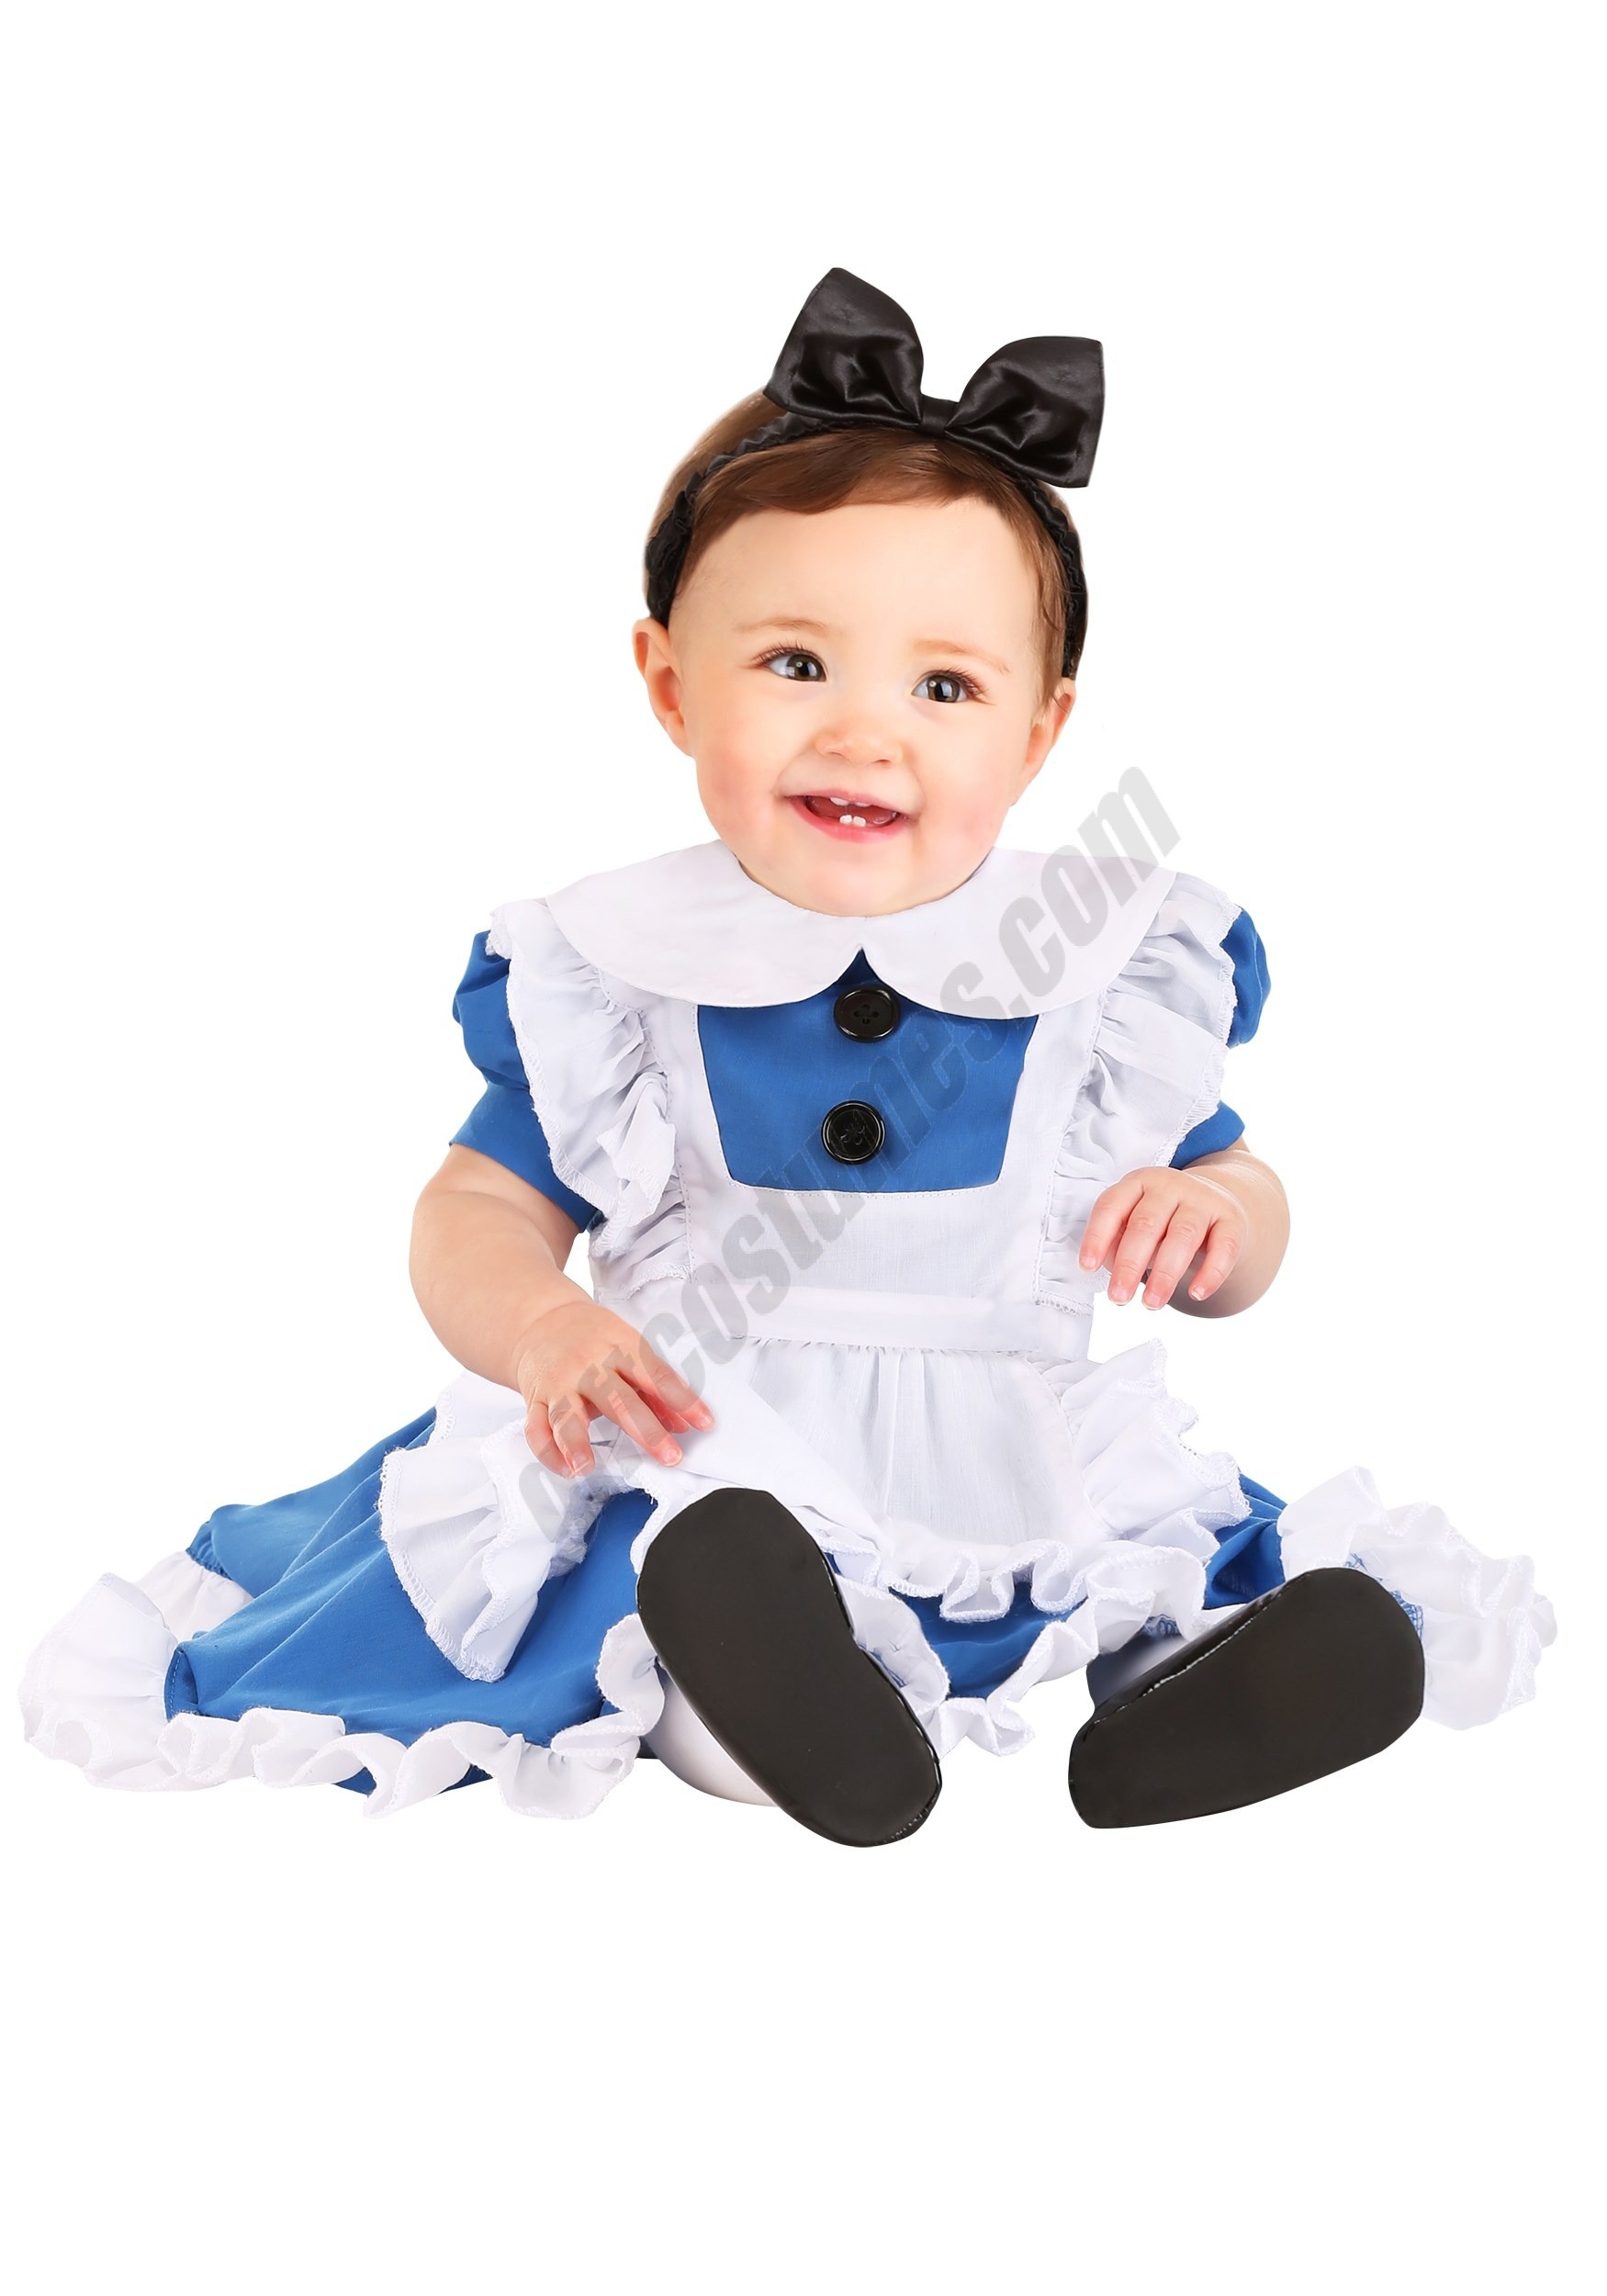 Wonderland Alice Costume for Infants Promotions - Wonderland Alice Costume for Infants Promotions